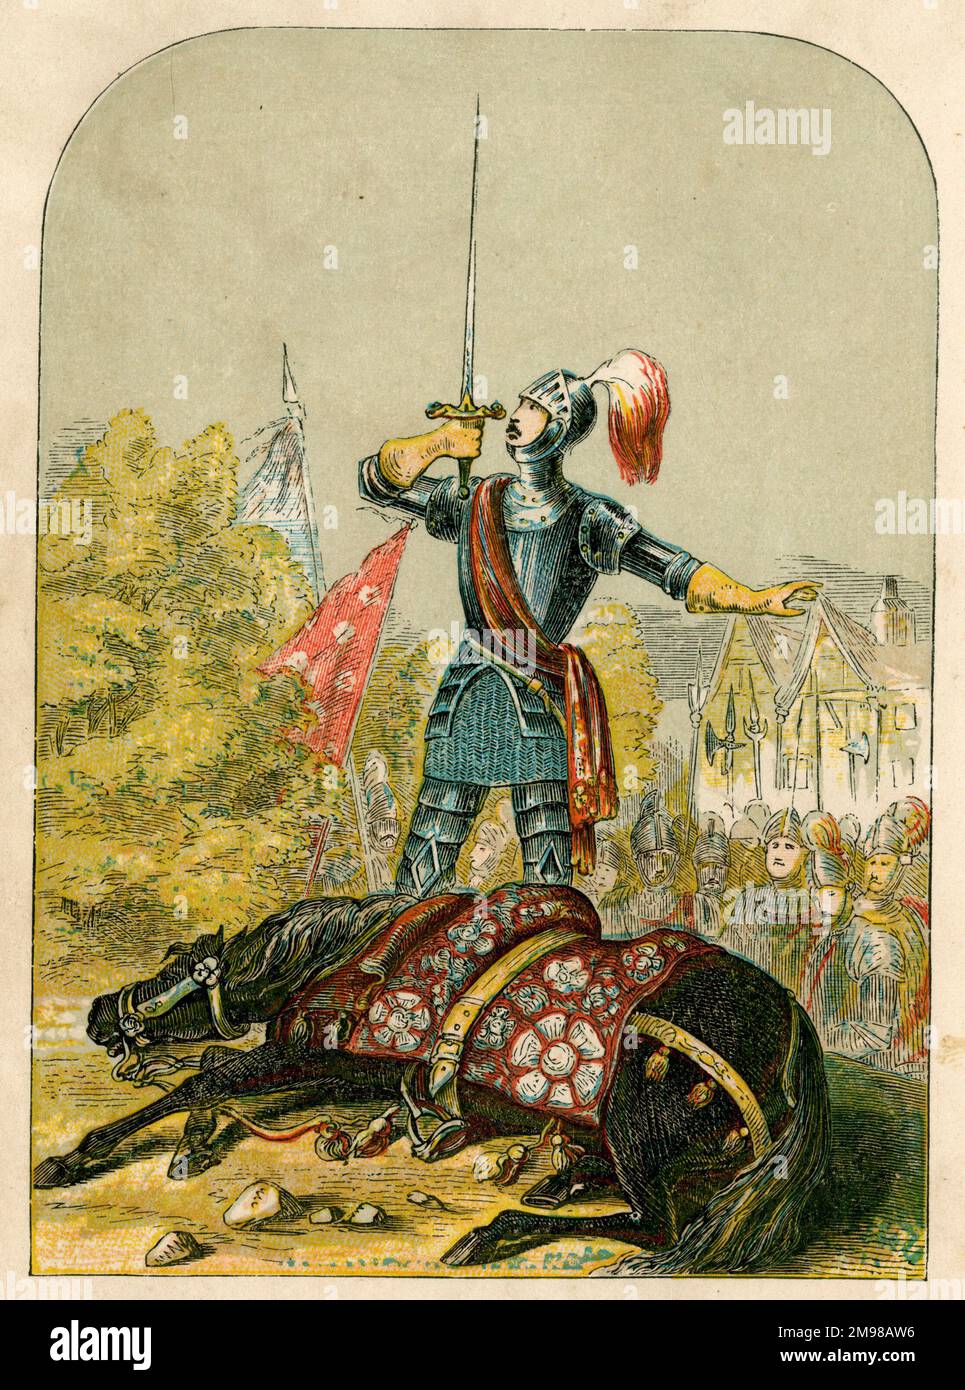 Richard Neville, 16th conte di Warwick, fa giuramento sulla sua spada dopo aver pugnalato il suo cavallo -- giurò che avrebbe conquistato o morì nel campo di battaglia, nella battaglia di Ferrybridge, durante le Guerre delle Rose. (Questo potrebbe essere mito piuttosto che fatto.) Foto Stock